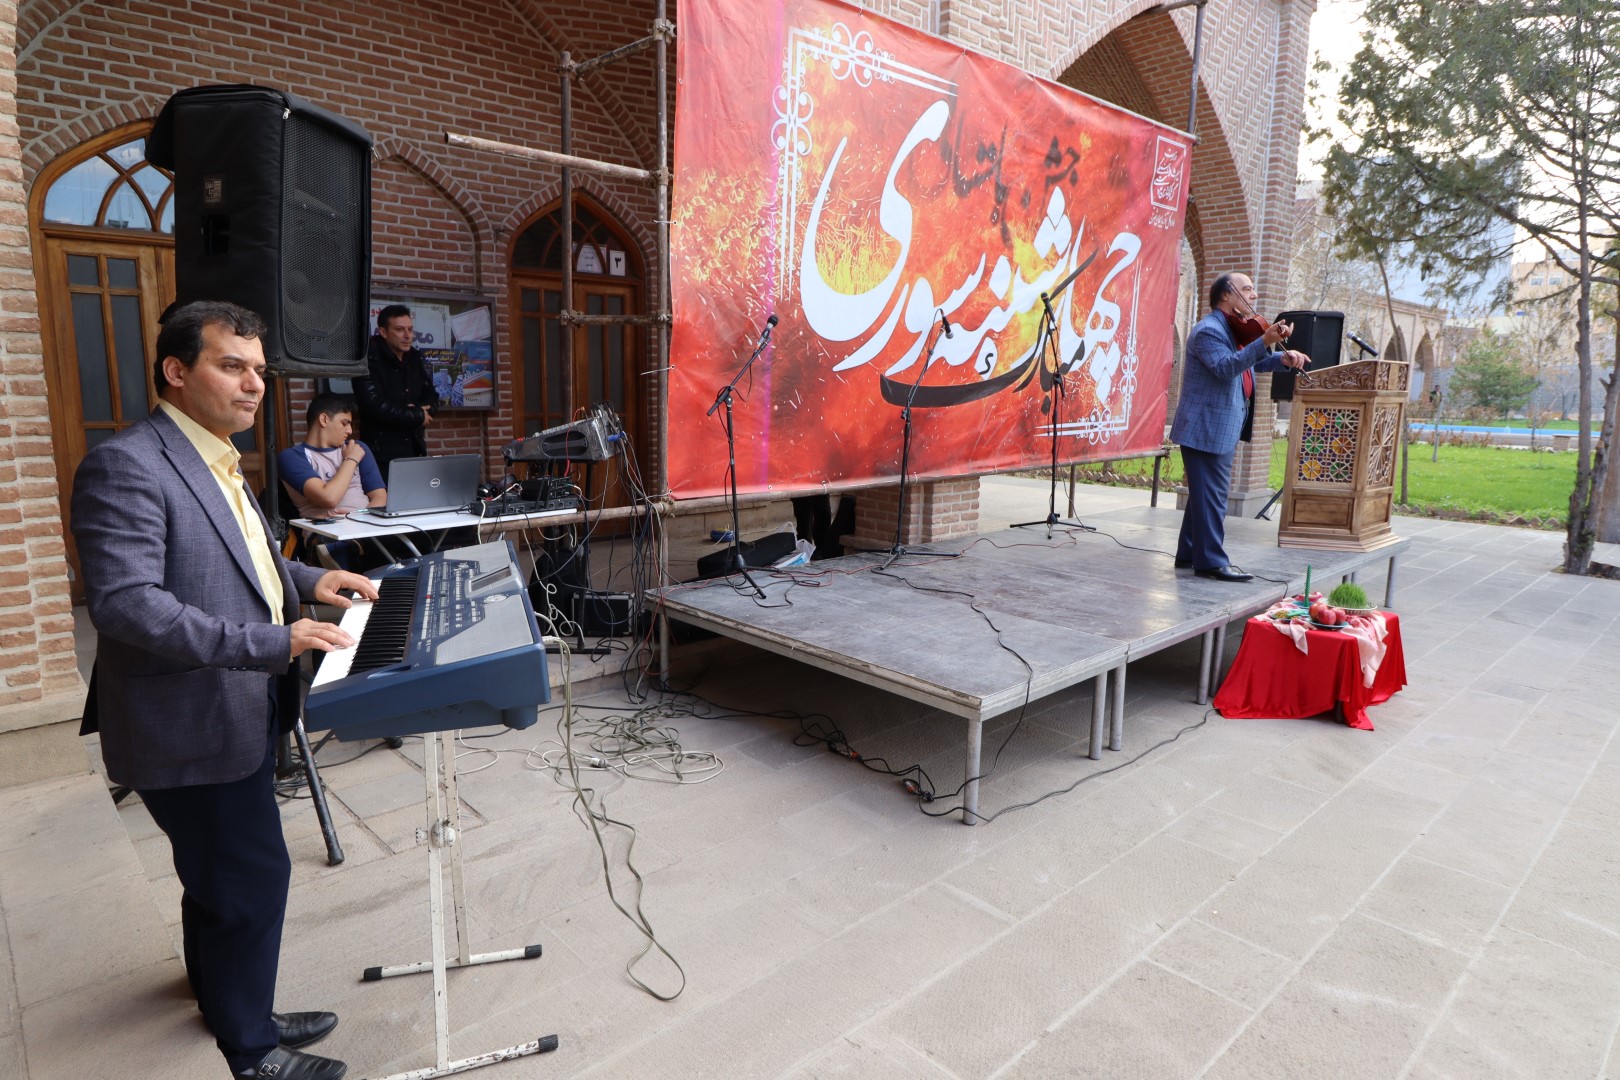 برگزاری نوروزگاه به مناسبت چهارشنبه سوری در باغ دوکمال تبریز